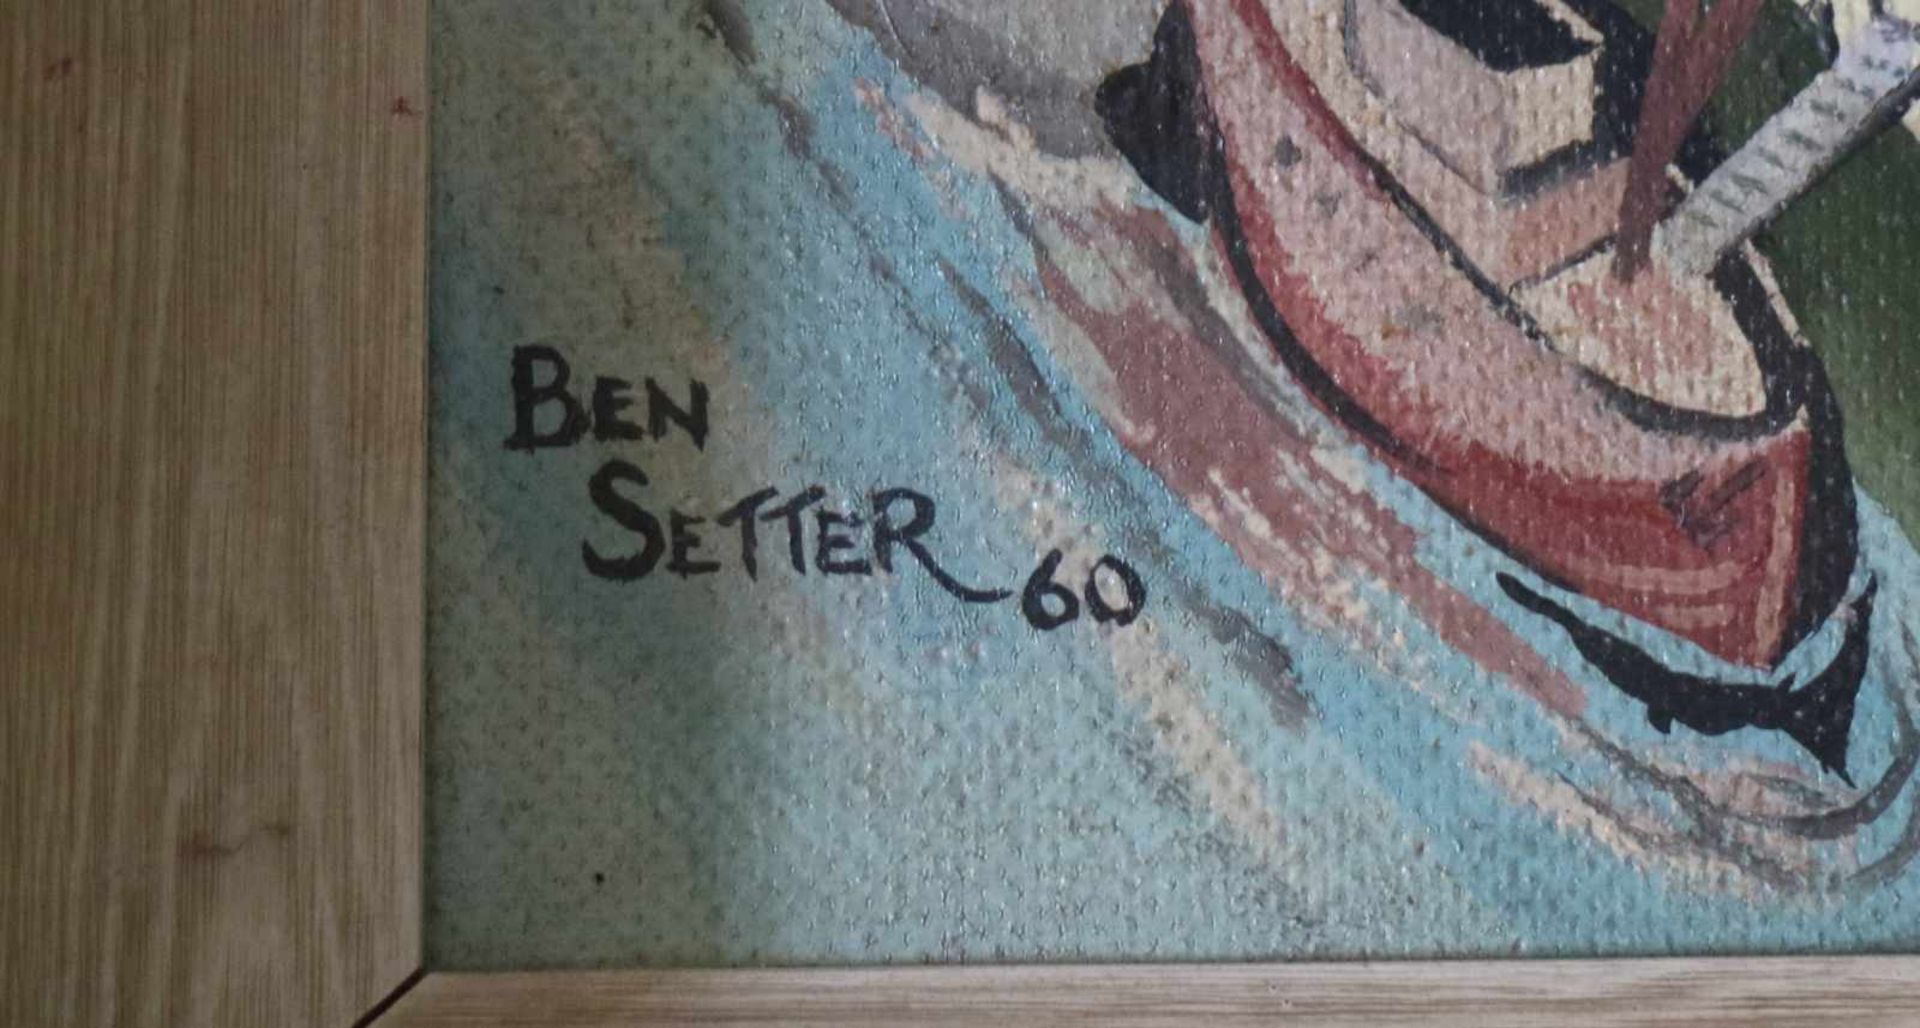 Ben Setteroil on canvas Landscape 196055 x 45 cm - Bild 3 aus 4